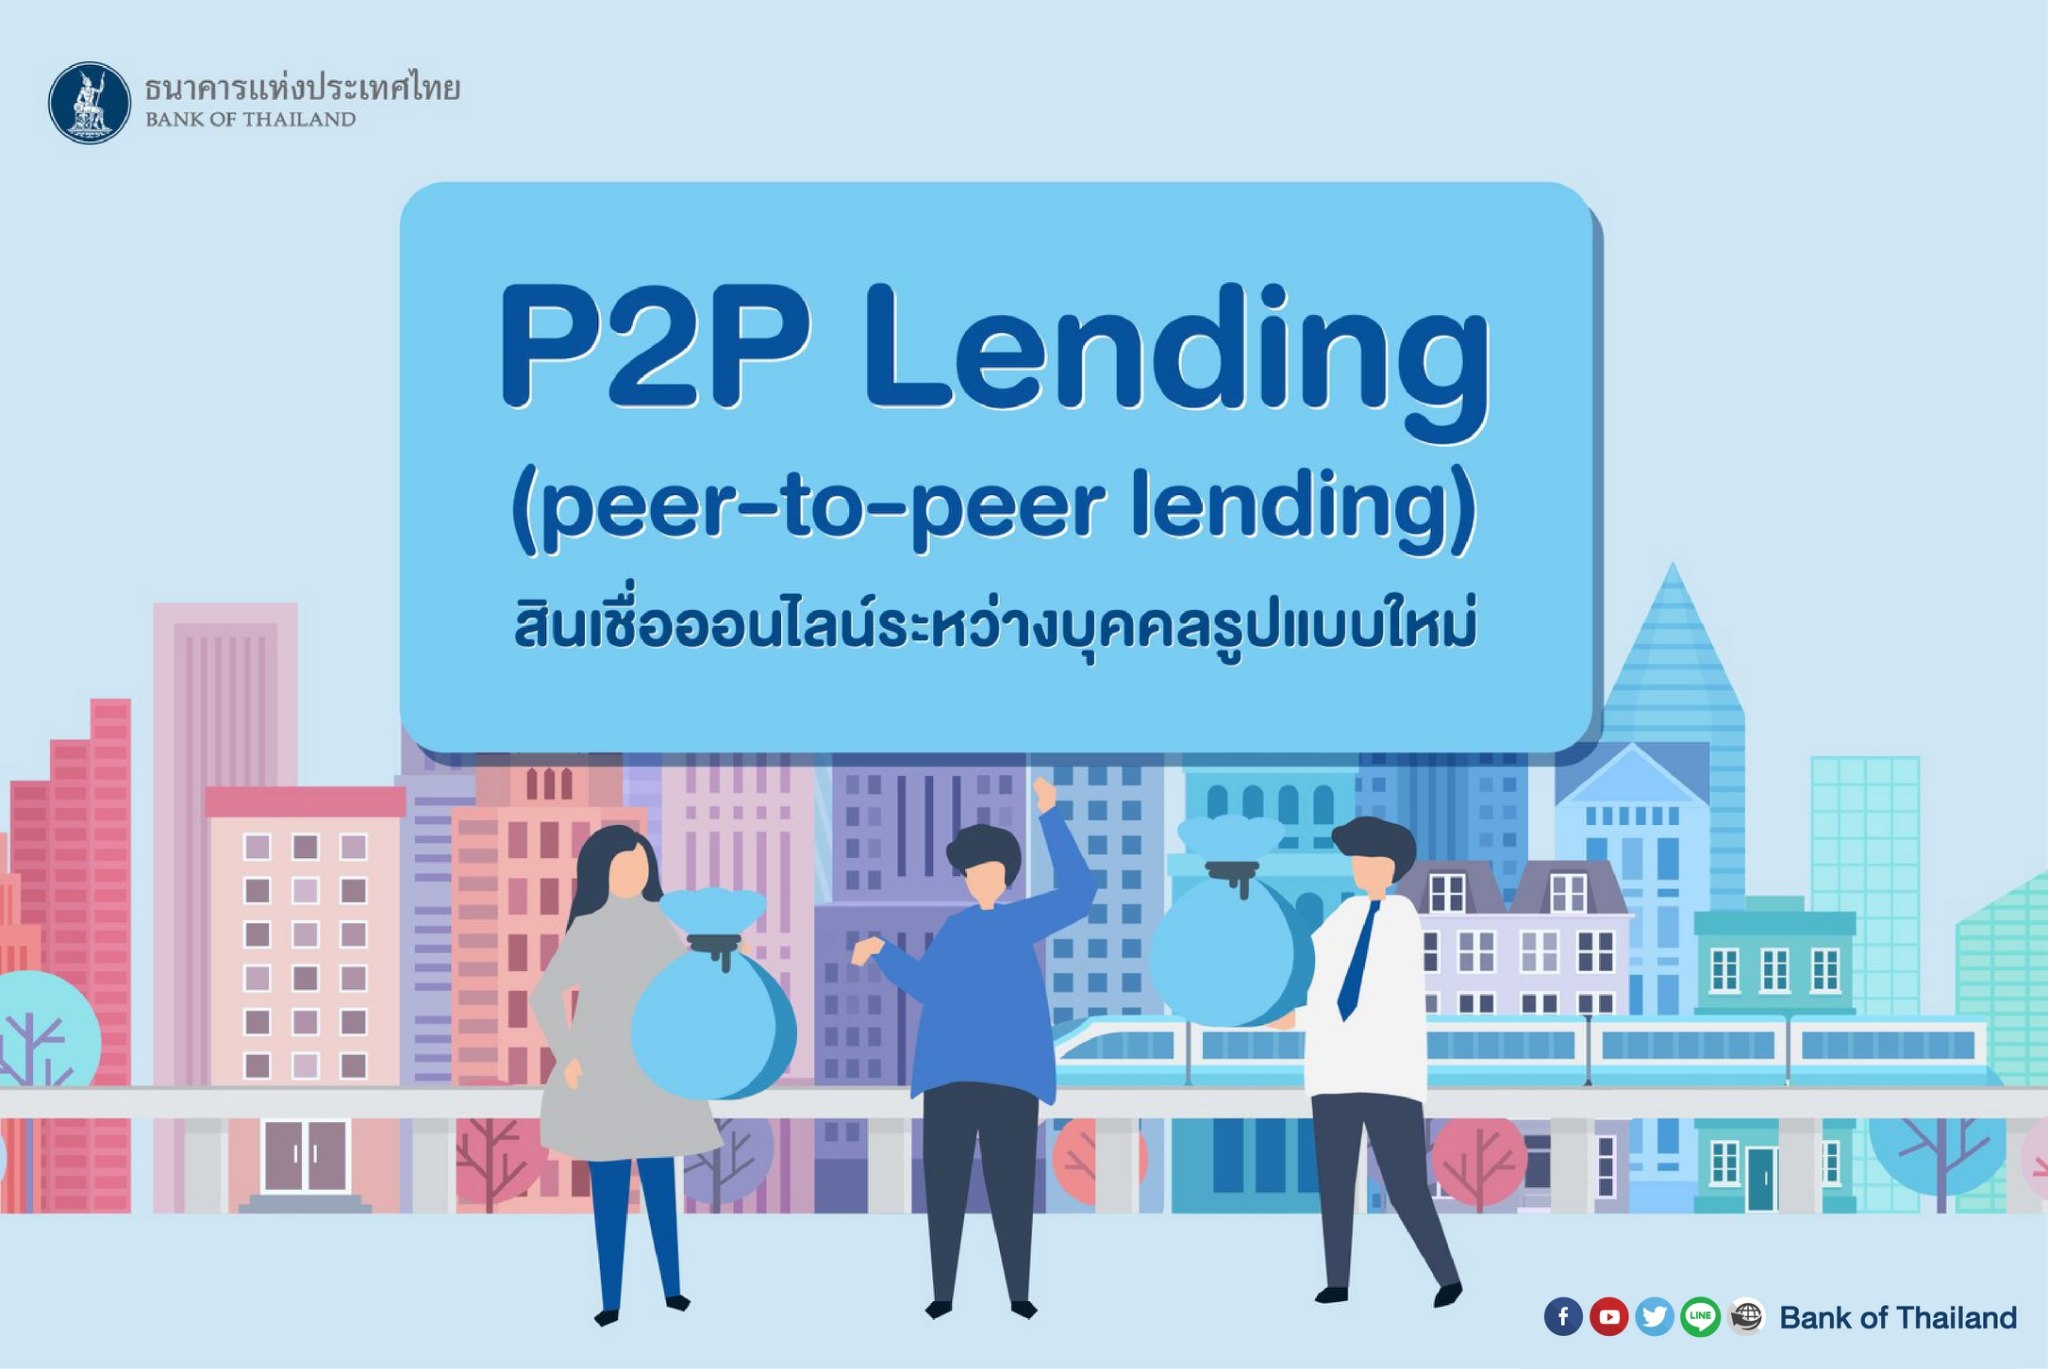 สินเชื่อออนไลน์ระหว่างบุคคล รูปแบบใหม่  #P2P Lending คืออะไร